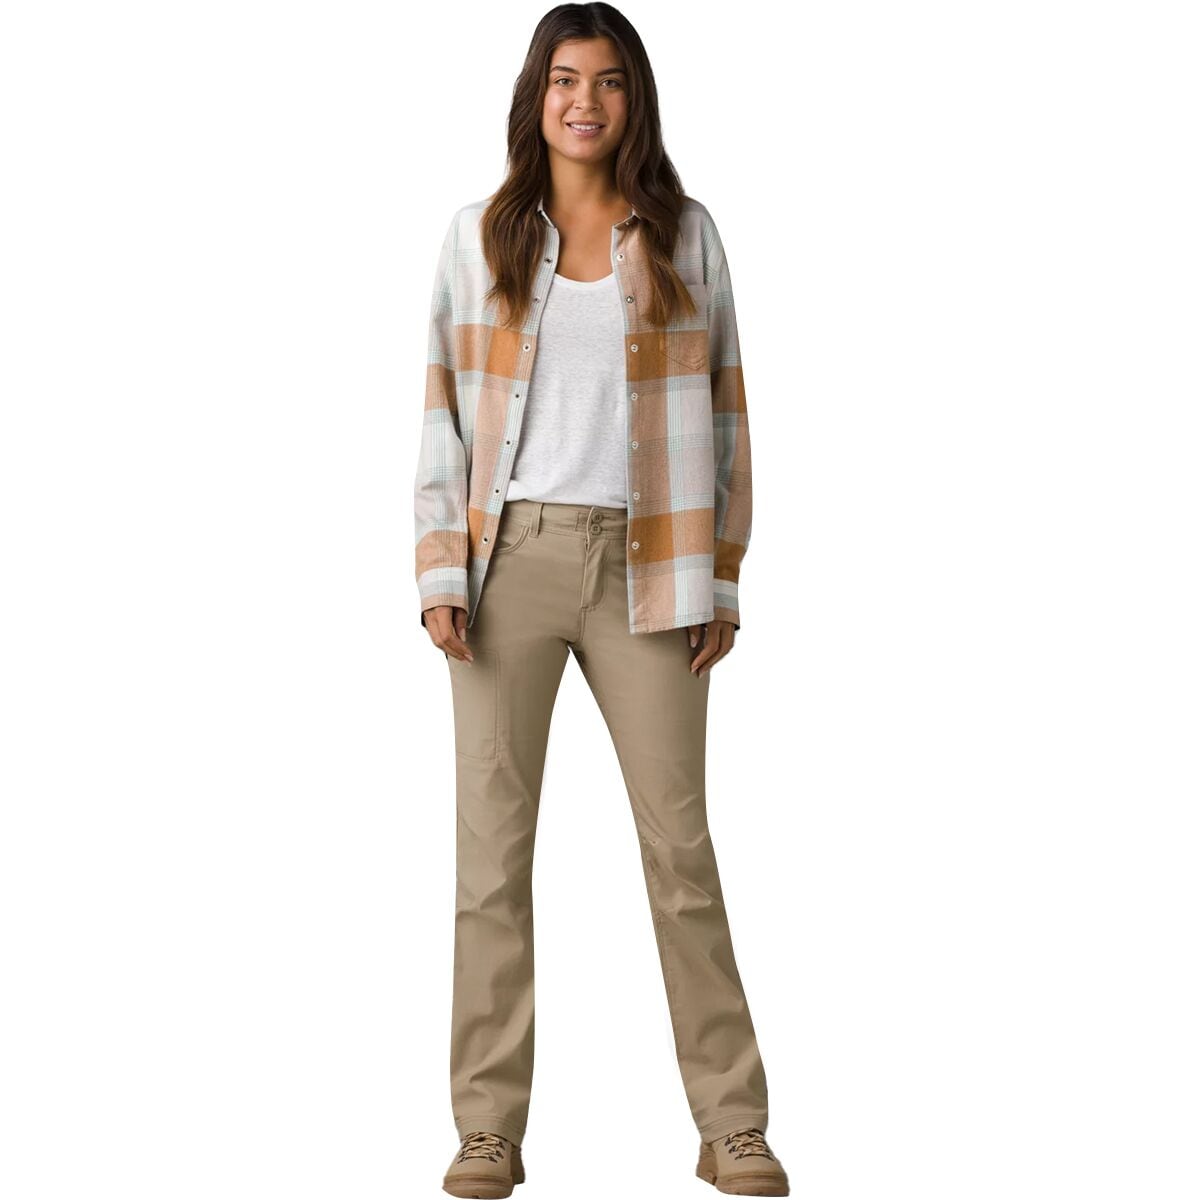  Prana Halle Straight Pants II Sandbar 8 S : Clothing